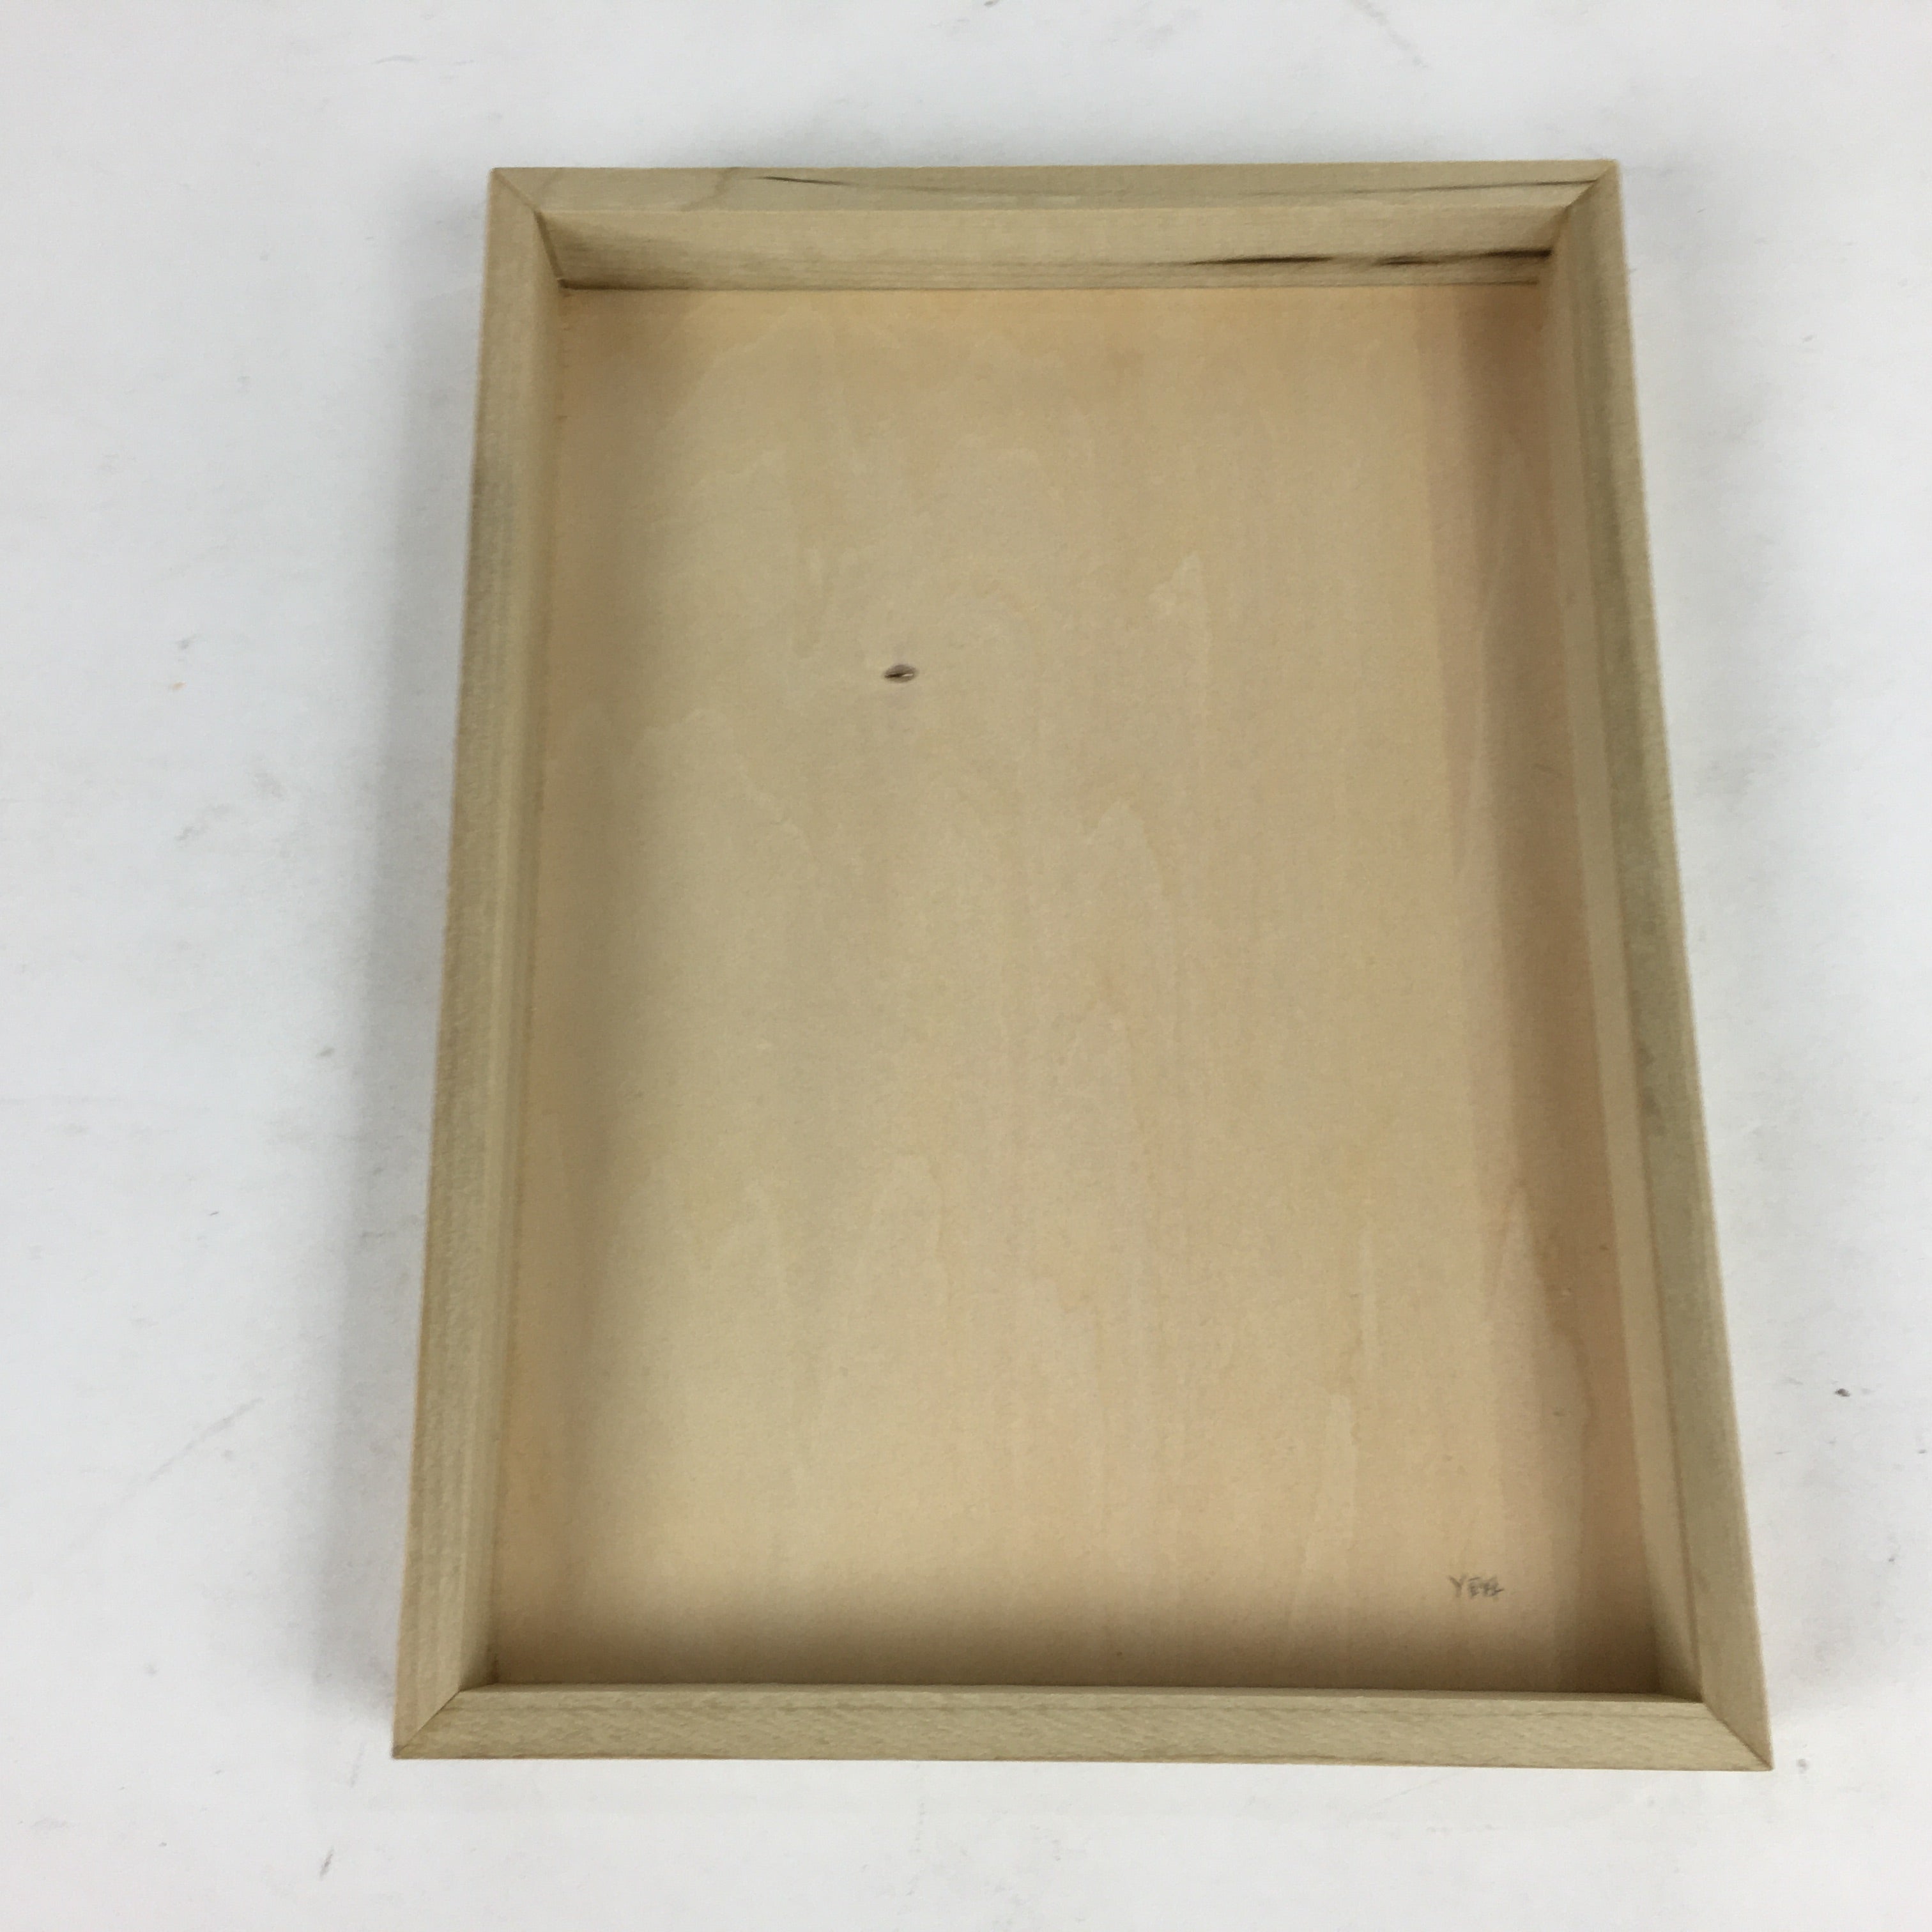 Japanese Wooden Storage Box Vtg Pottery Hako Inside 15.8x11.9x2 cm WB917